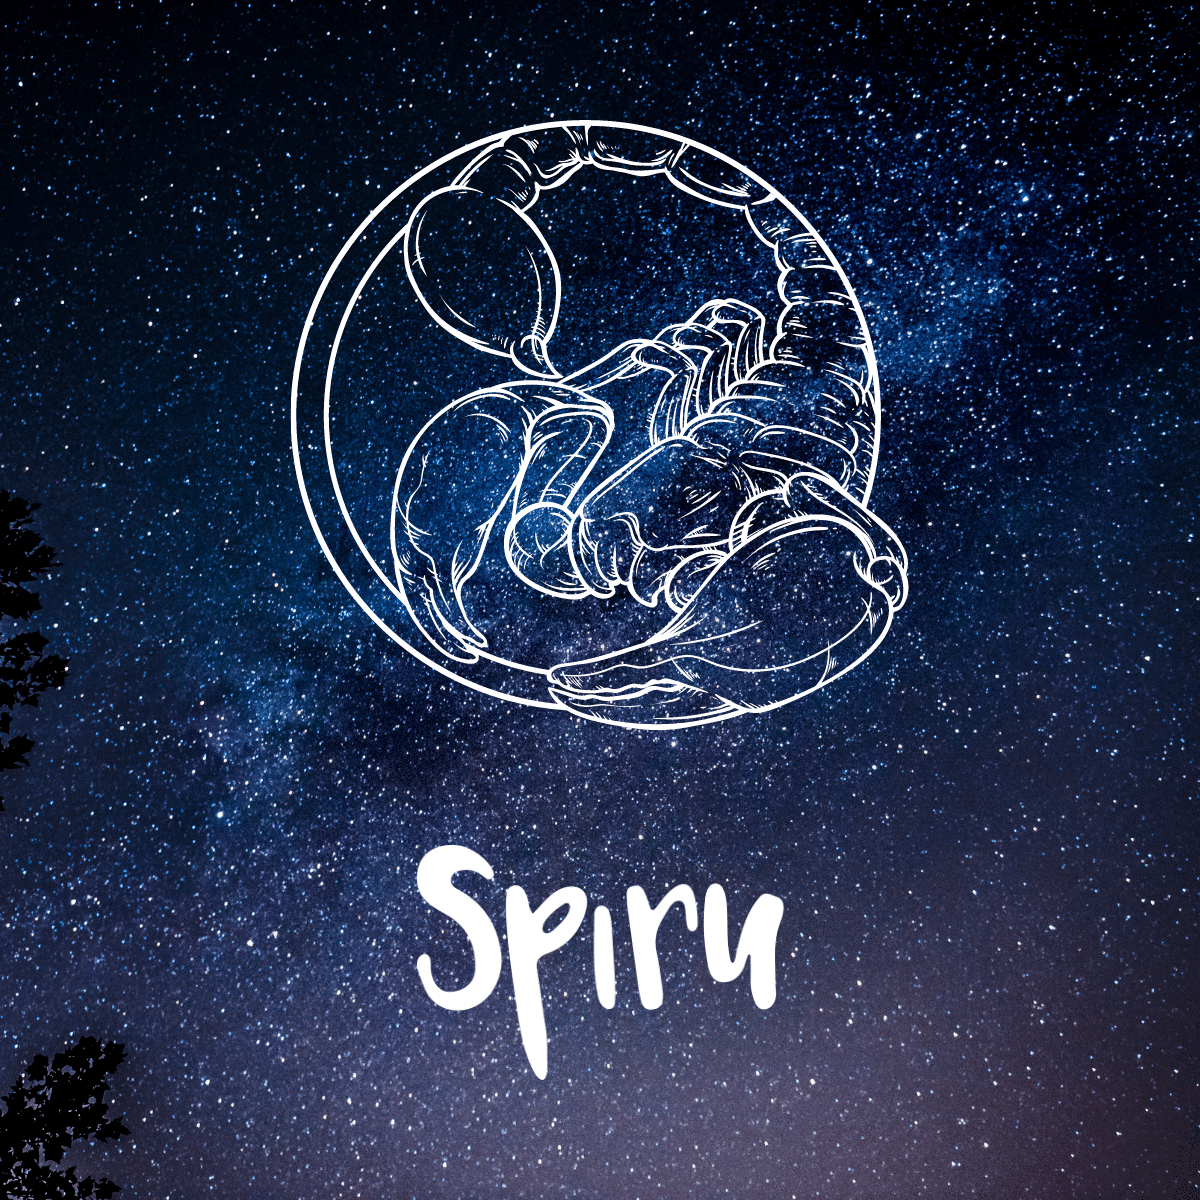 skorpion Sternzeichen illustration auf Sternenhimmel Spiru